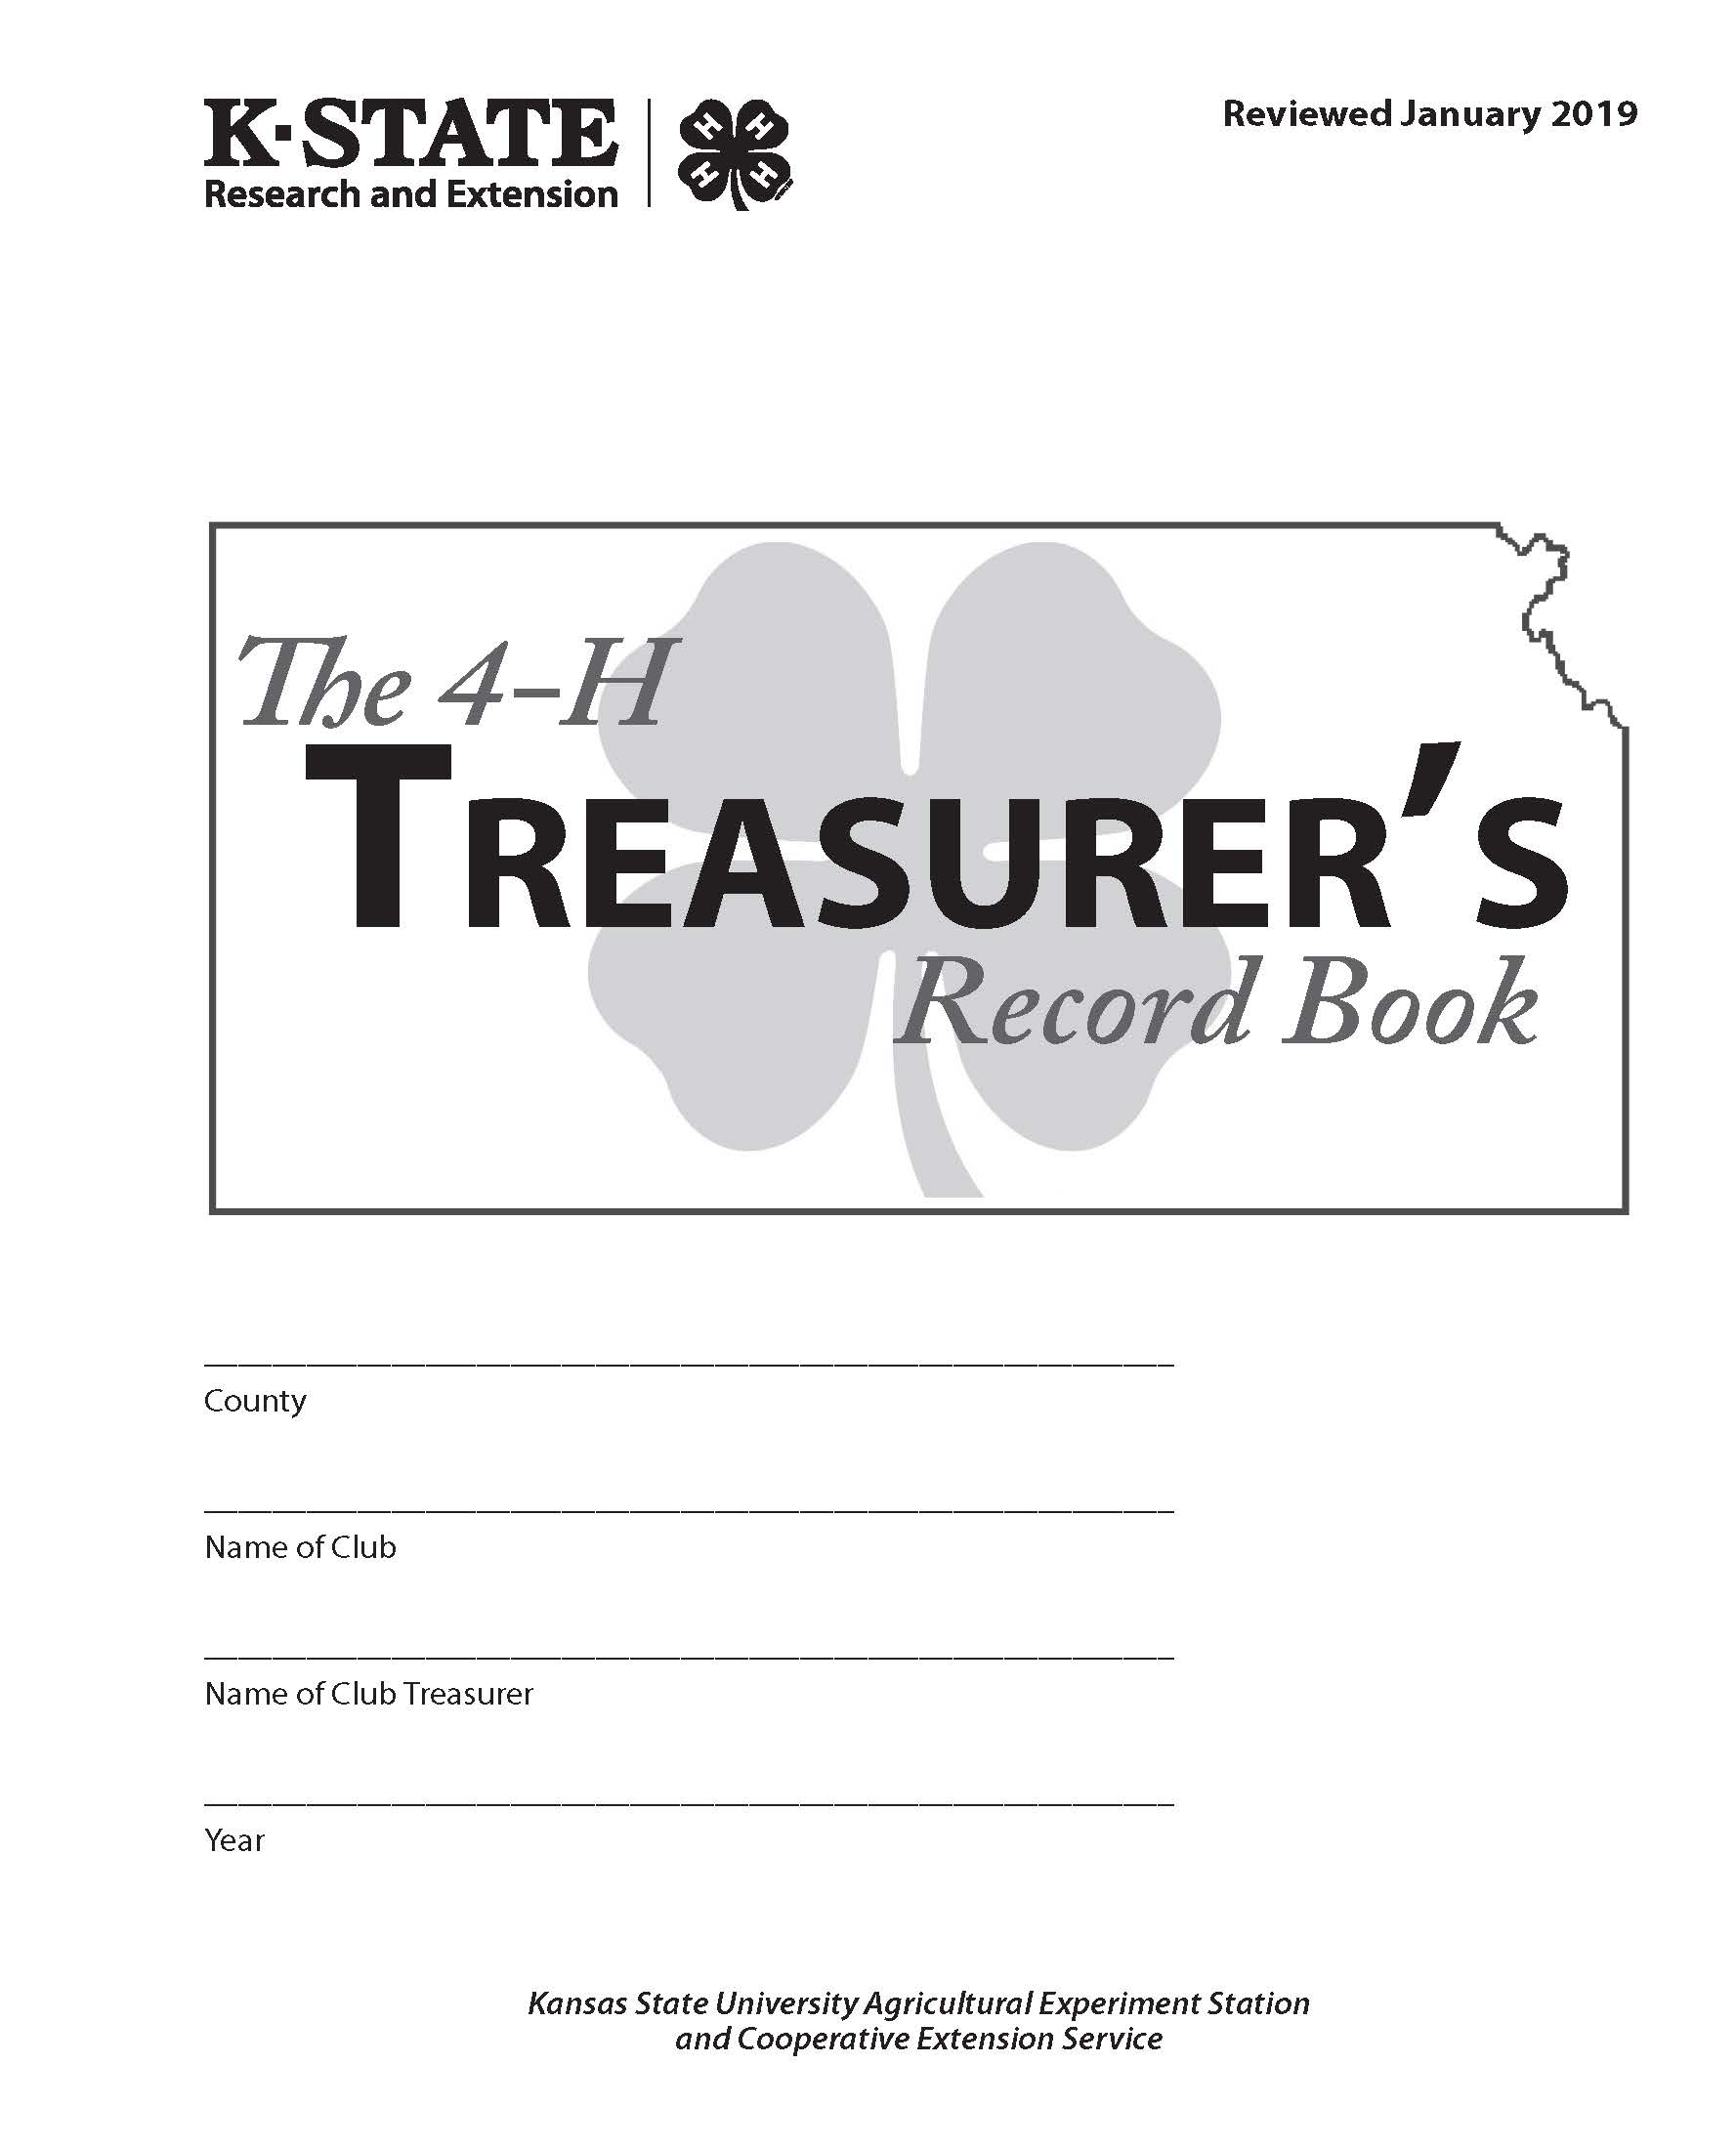 The 4-H Treasurer's Record Book